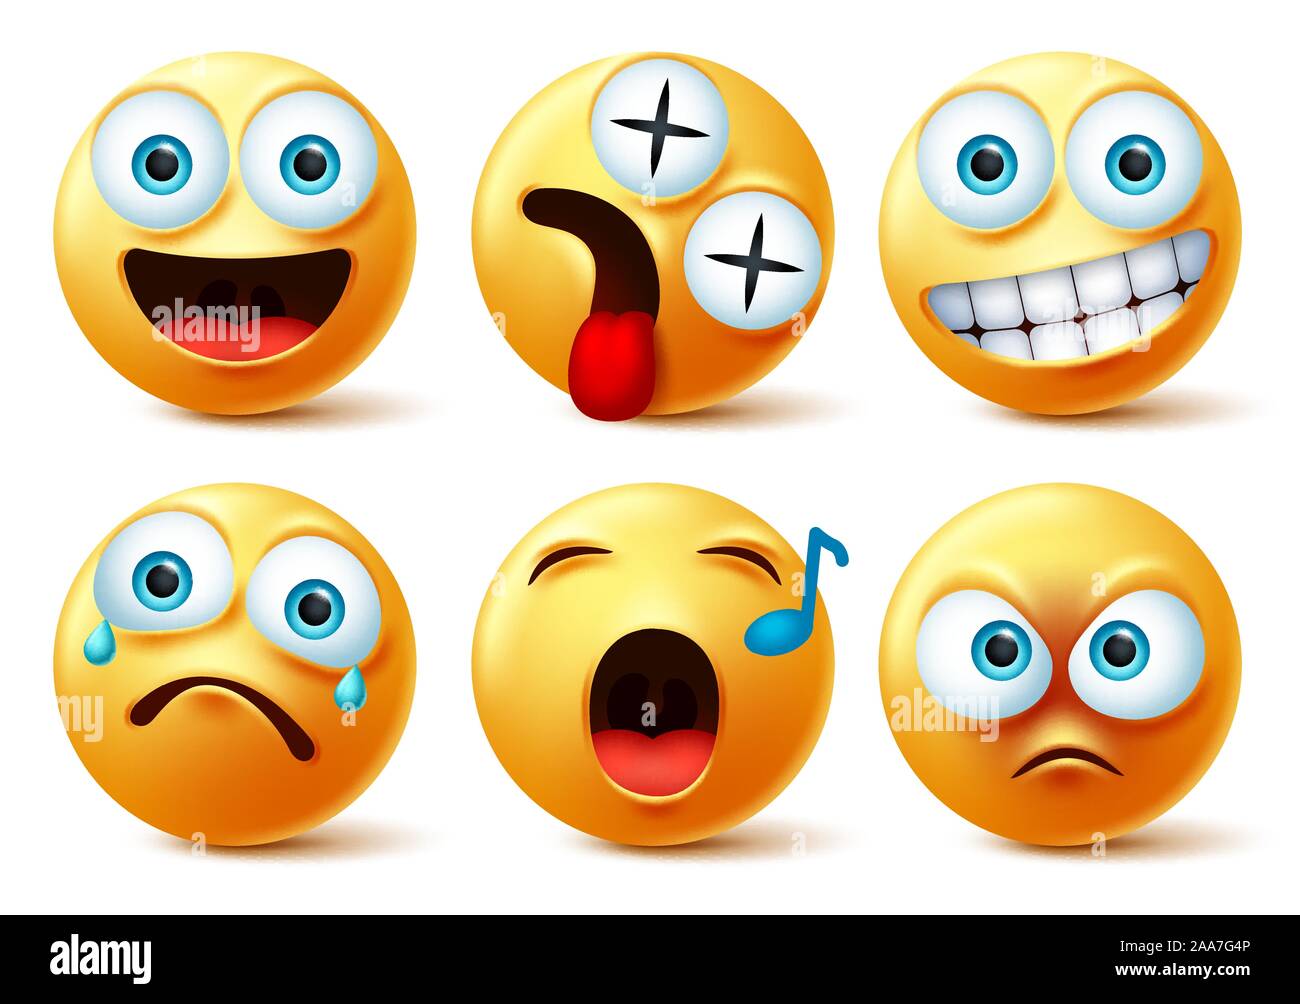 Smiley face emoji vector set. Smileys émoticônes ou émoticône mignon avec visages heureux, Dizzy, le chant, la colère, la surprise, triste et pleurer de l'expression du visage. Illustration de Vecteur